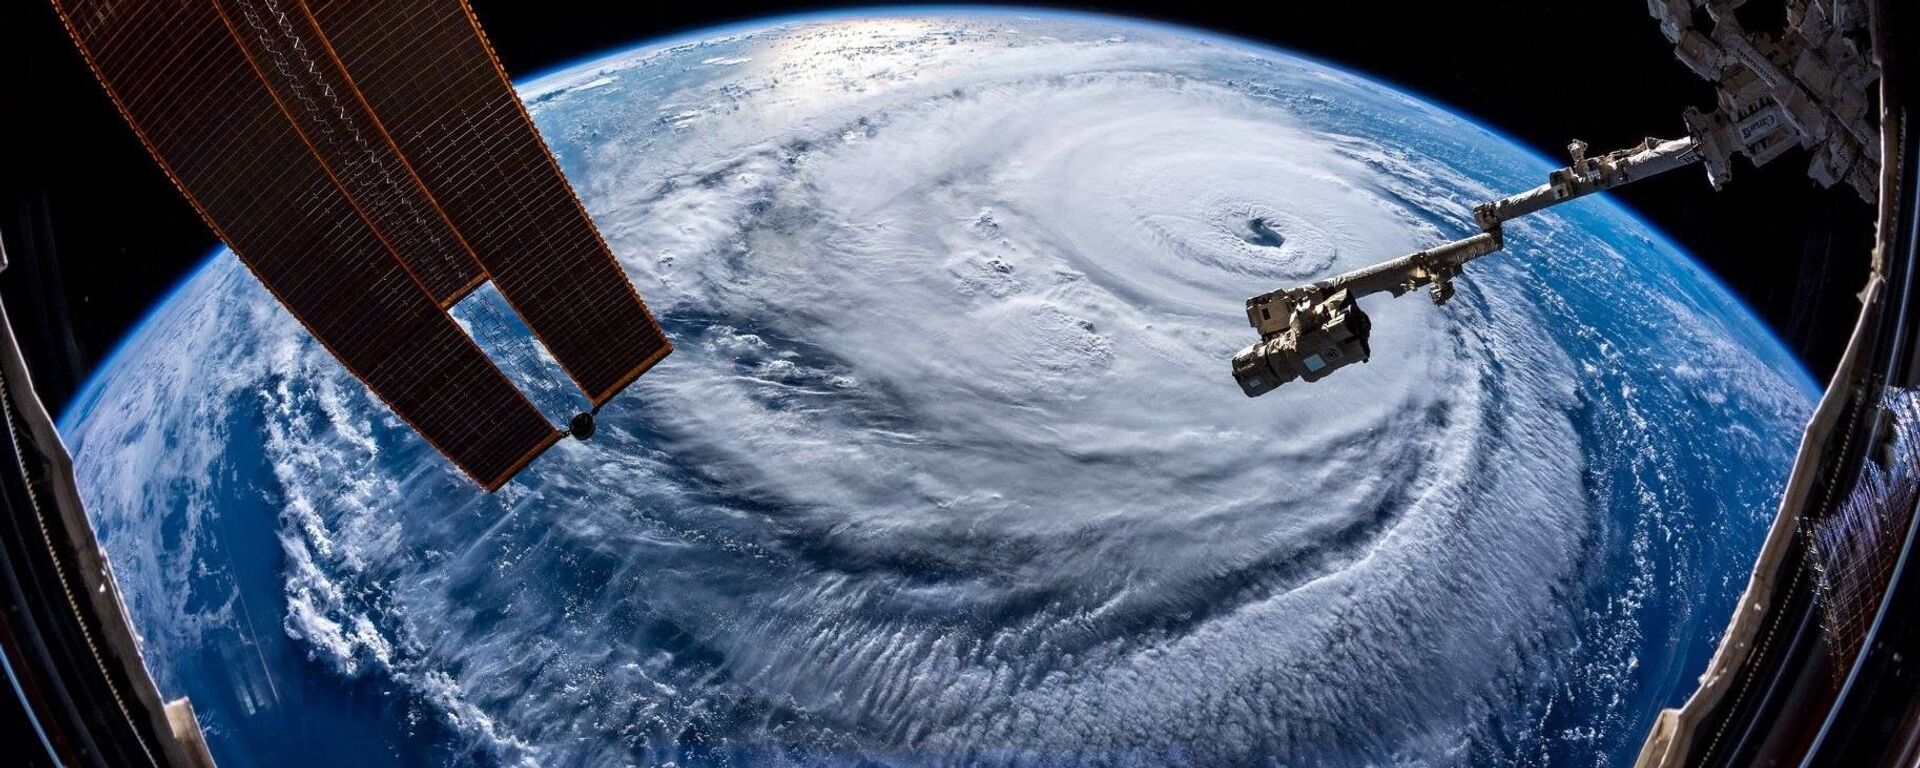 Ураган Флоренс, сфотографированный астронавтом Александром Герстом с МКС - Sputnik Lietuva, 1920, 15.05.2021